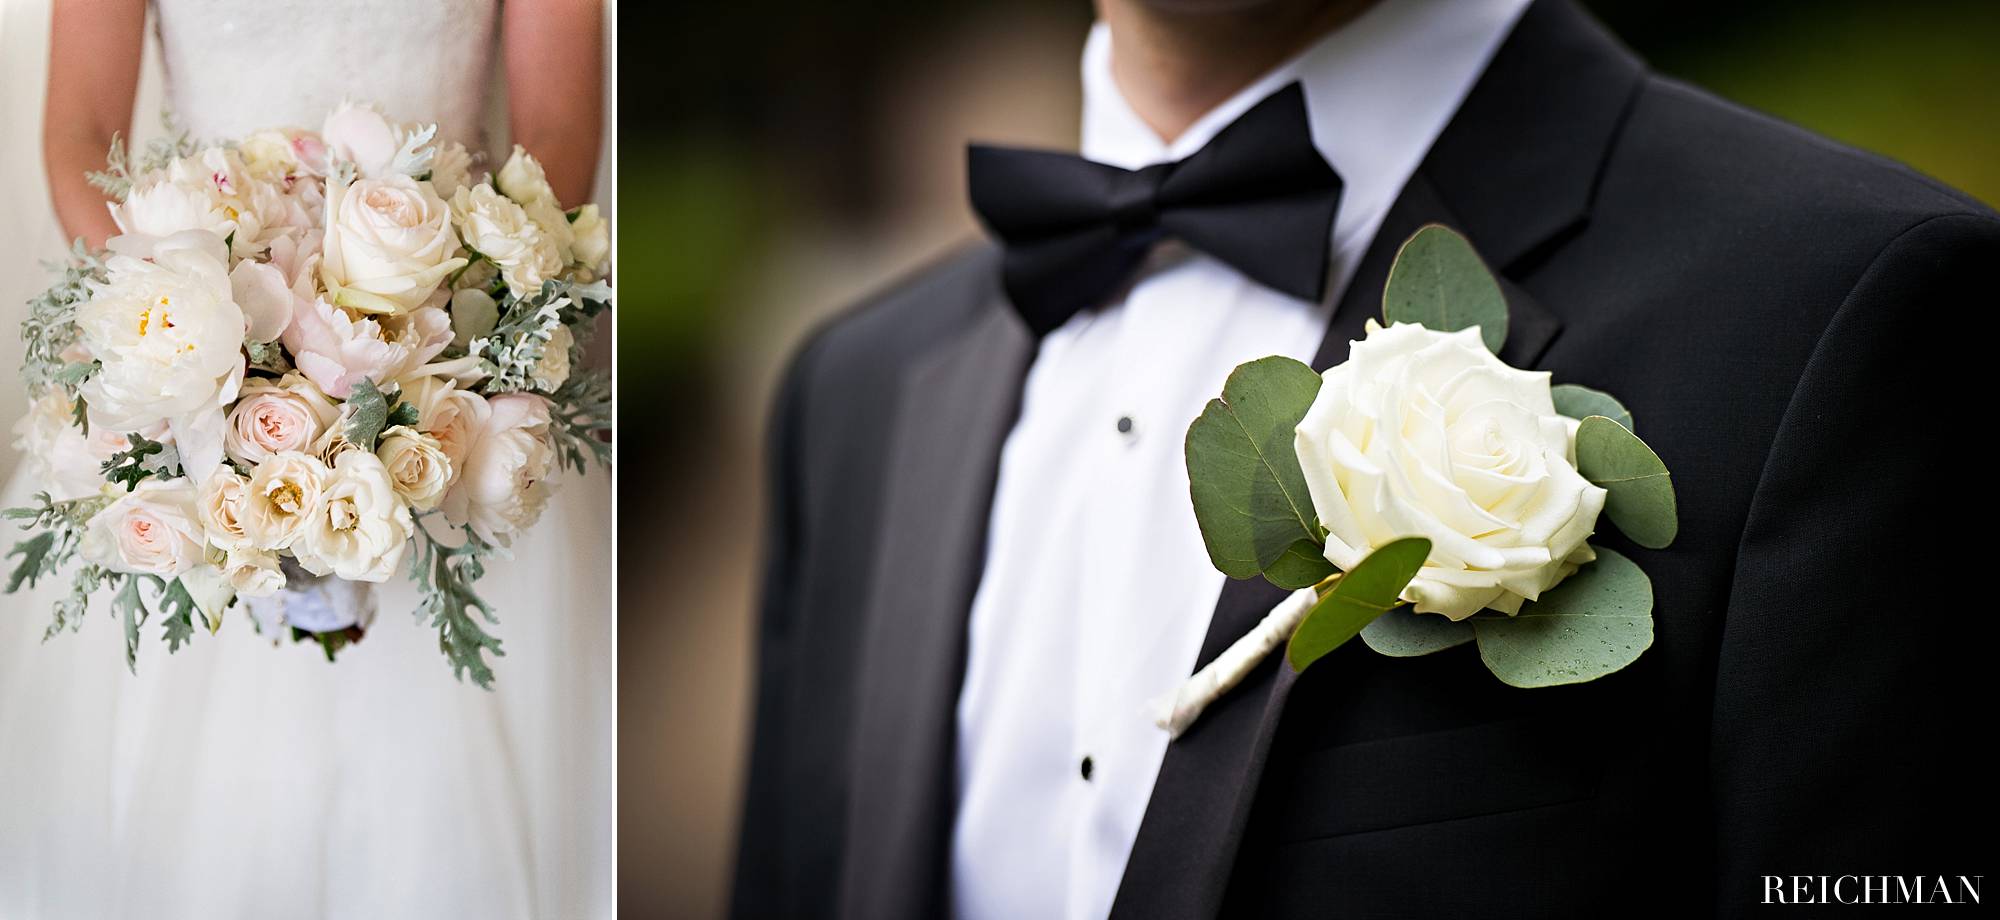 Bride's bouquet and groom's boutonnière details